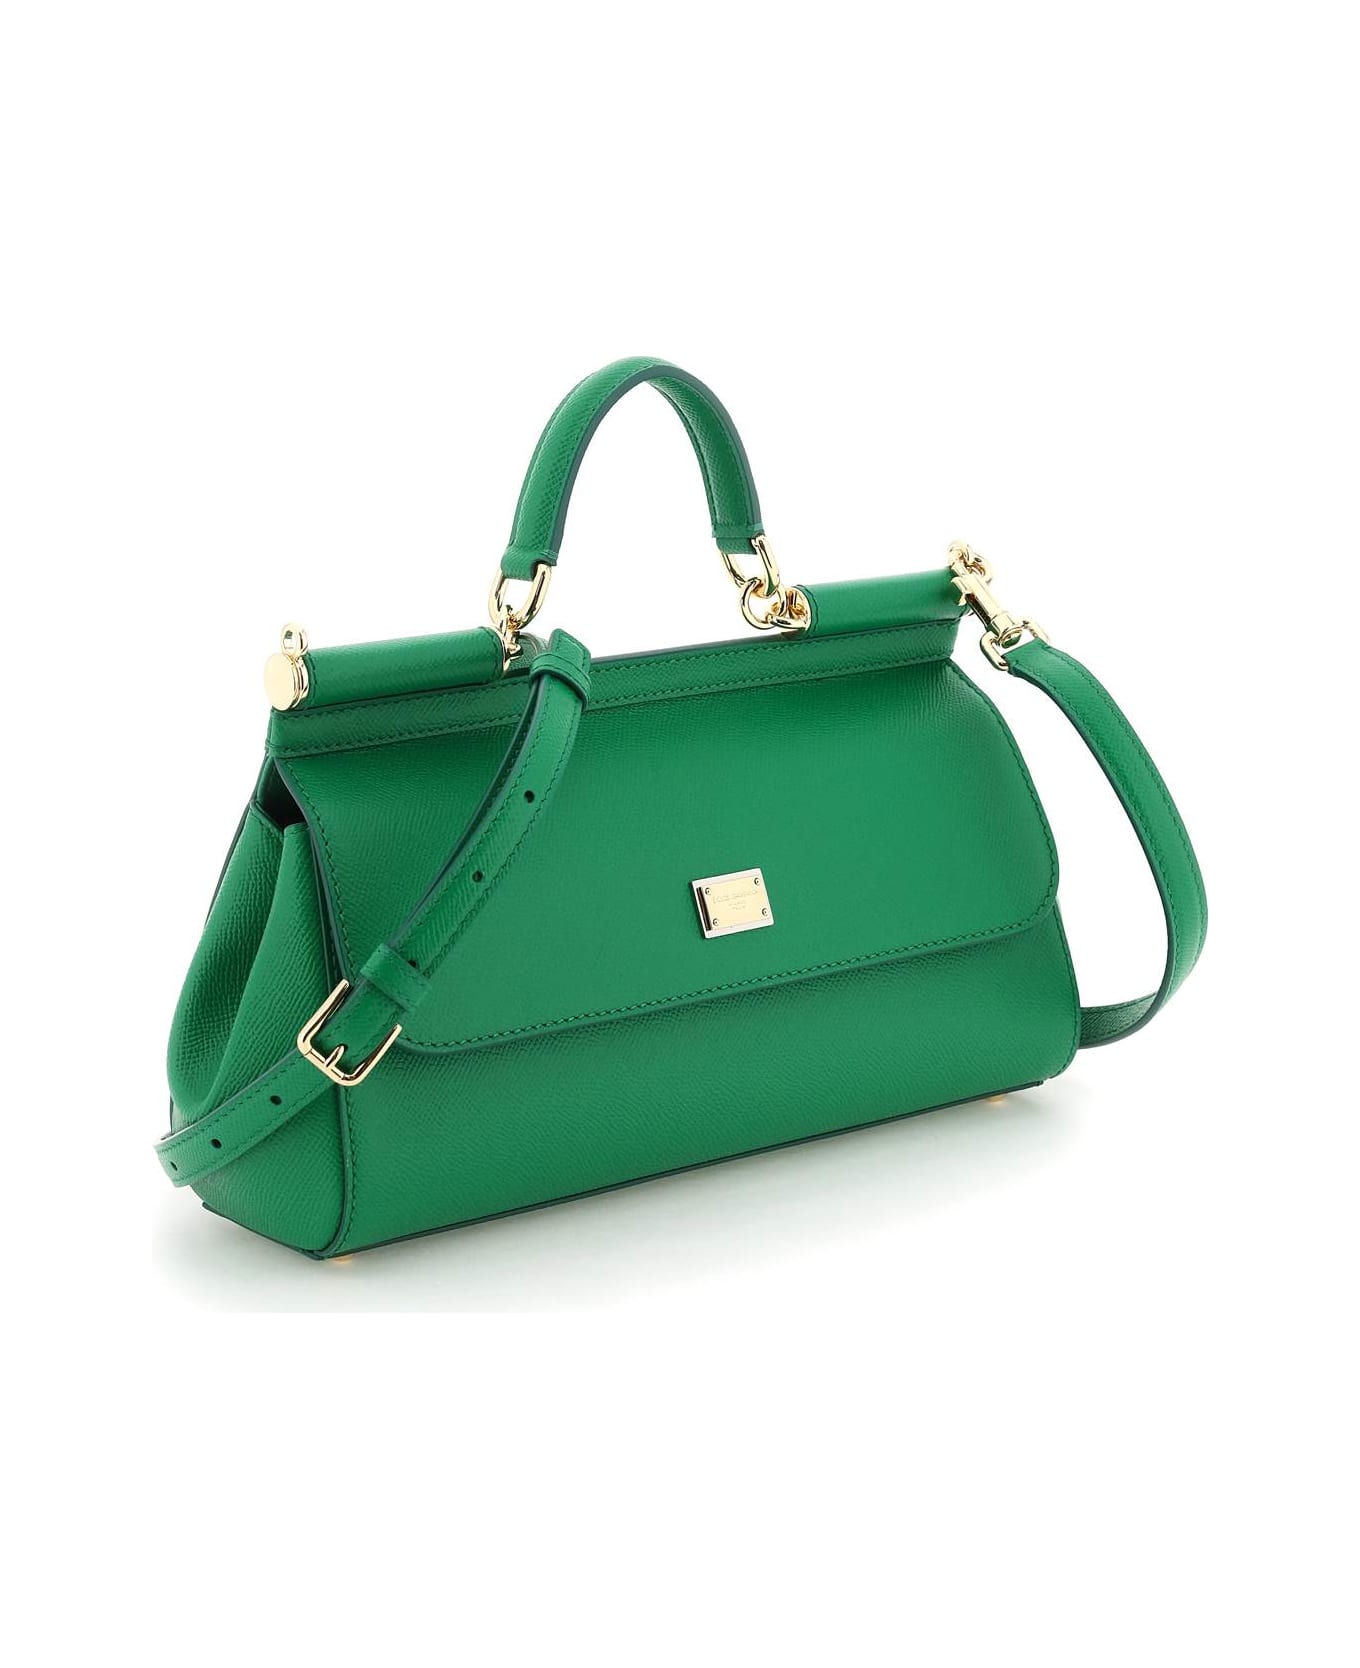 Dolce & Gabbana Sicily Handbag - green